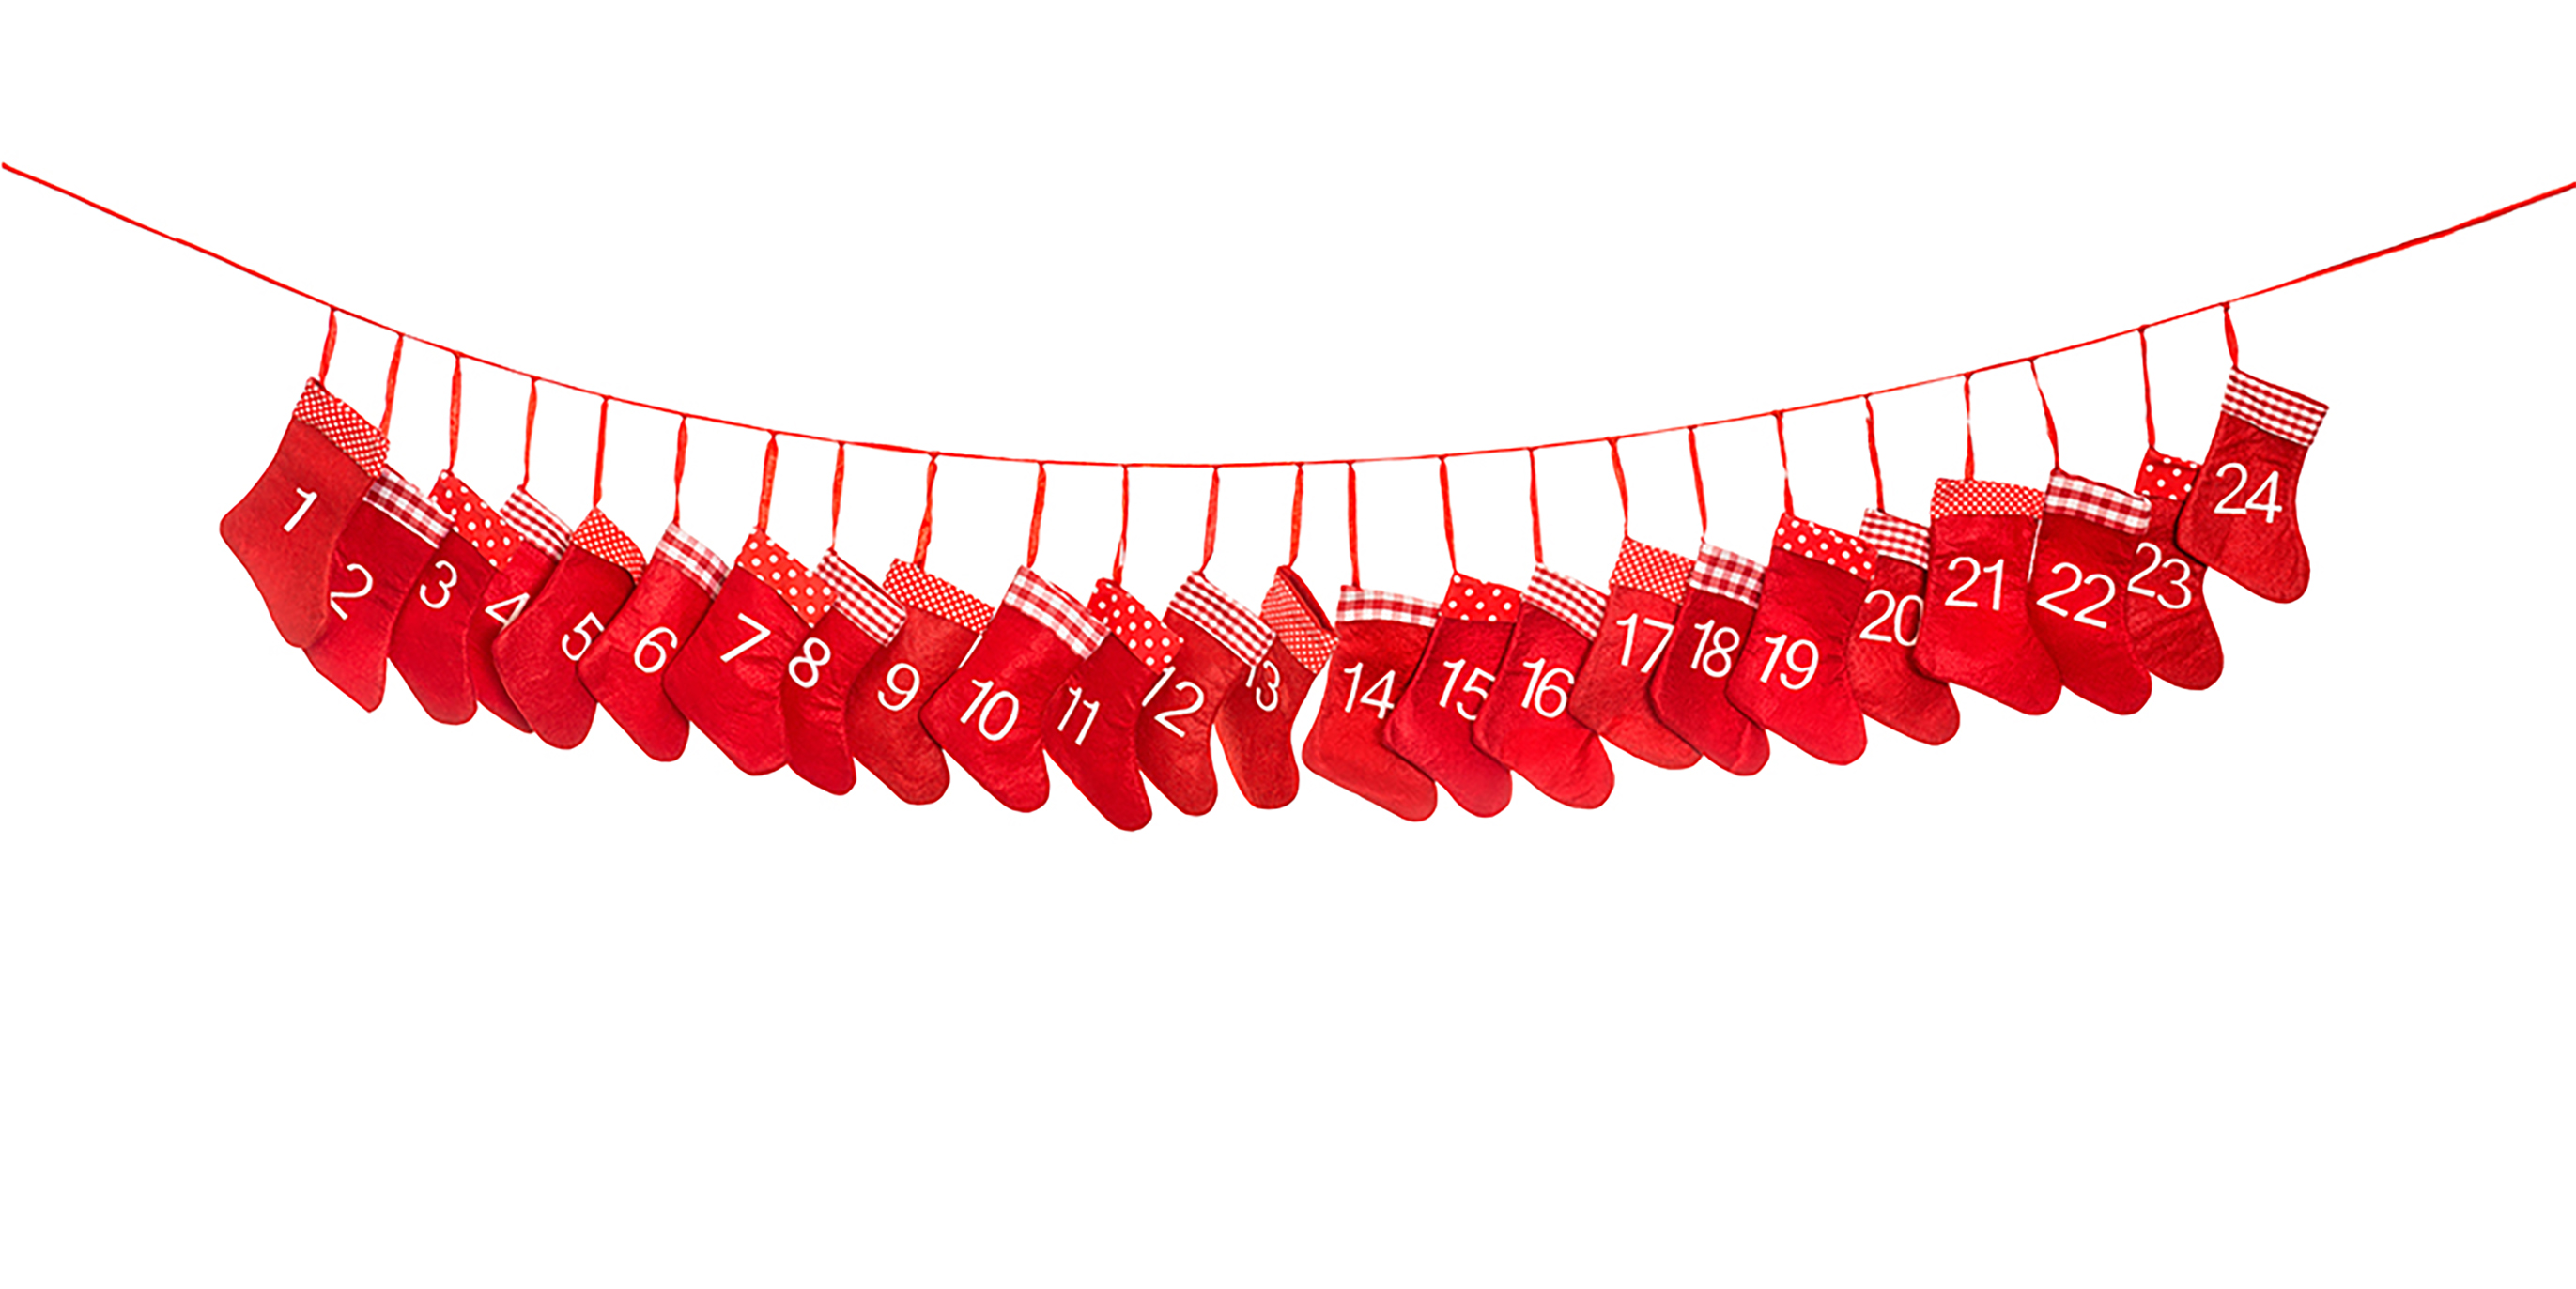 röda strumpor numrerade från 1 till 24 och upphängda på ett snöre